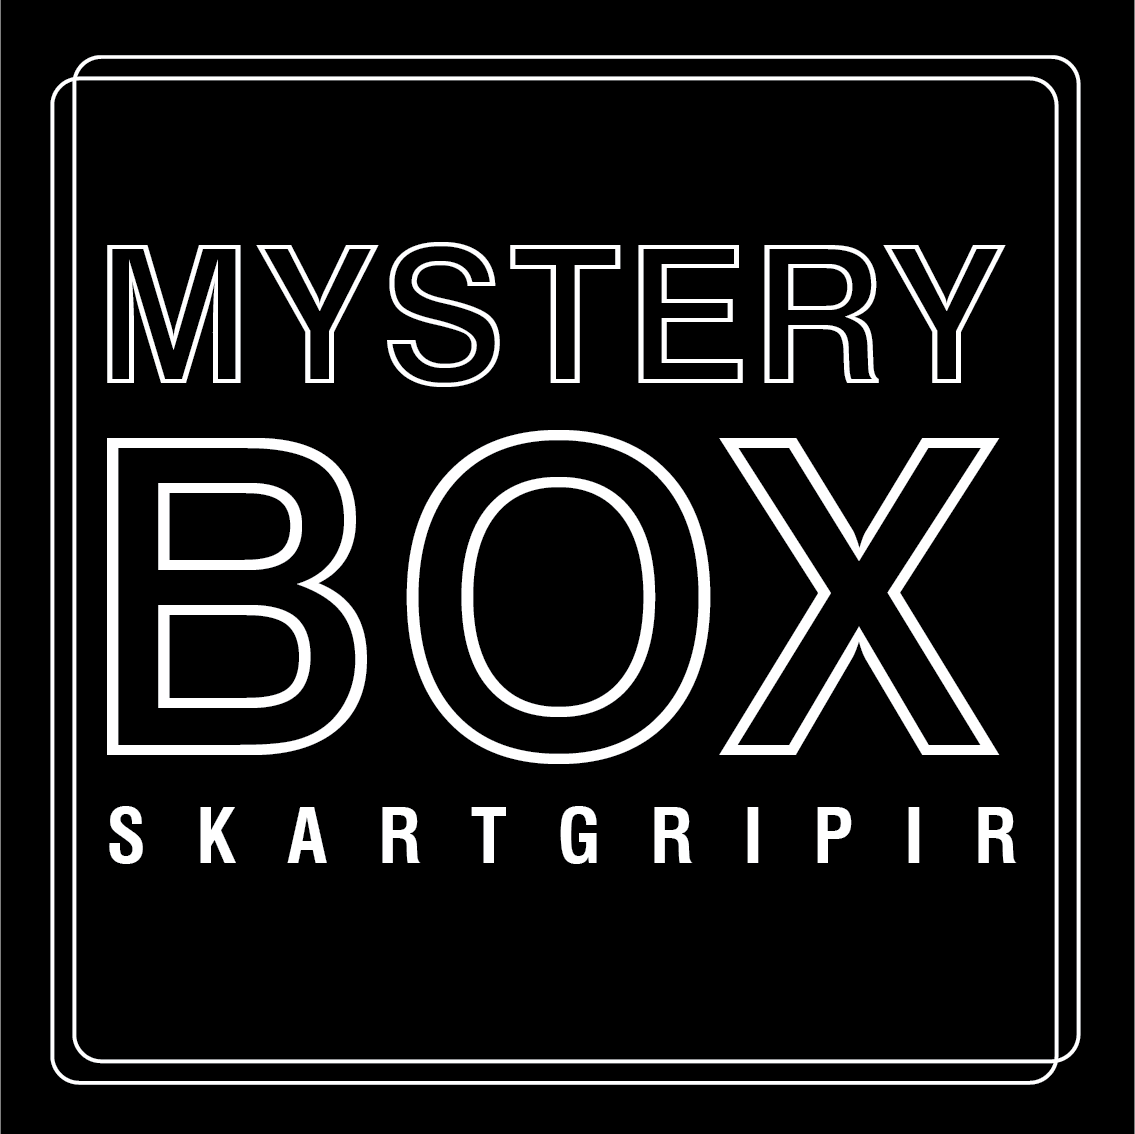 MYSTERY BOX millistærð - skartgripir